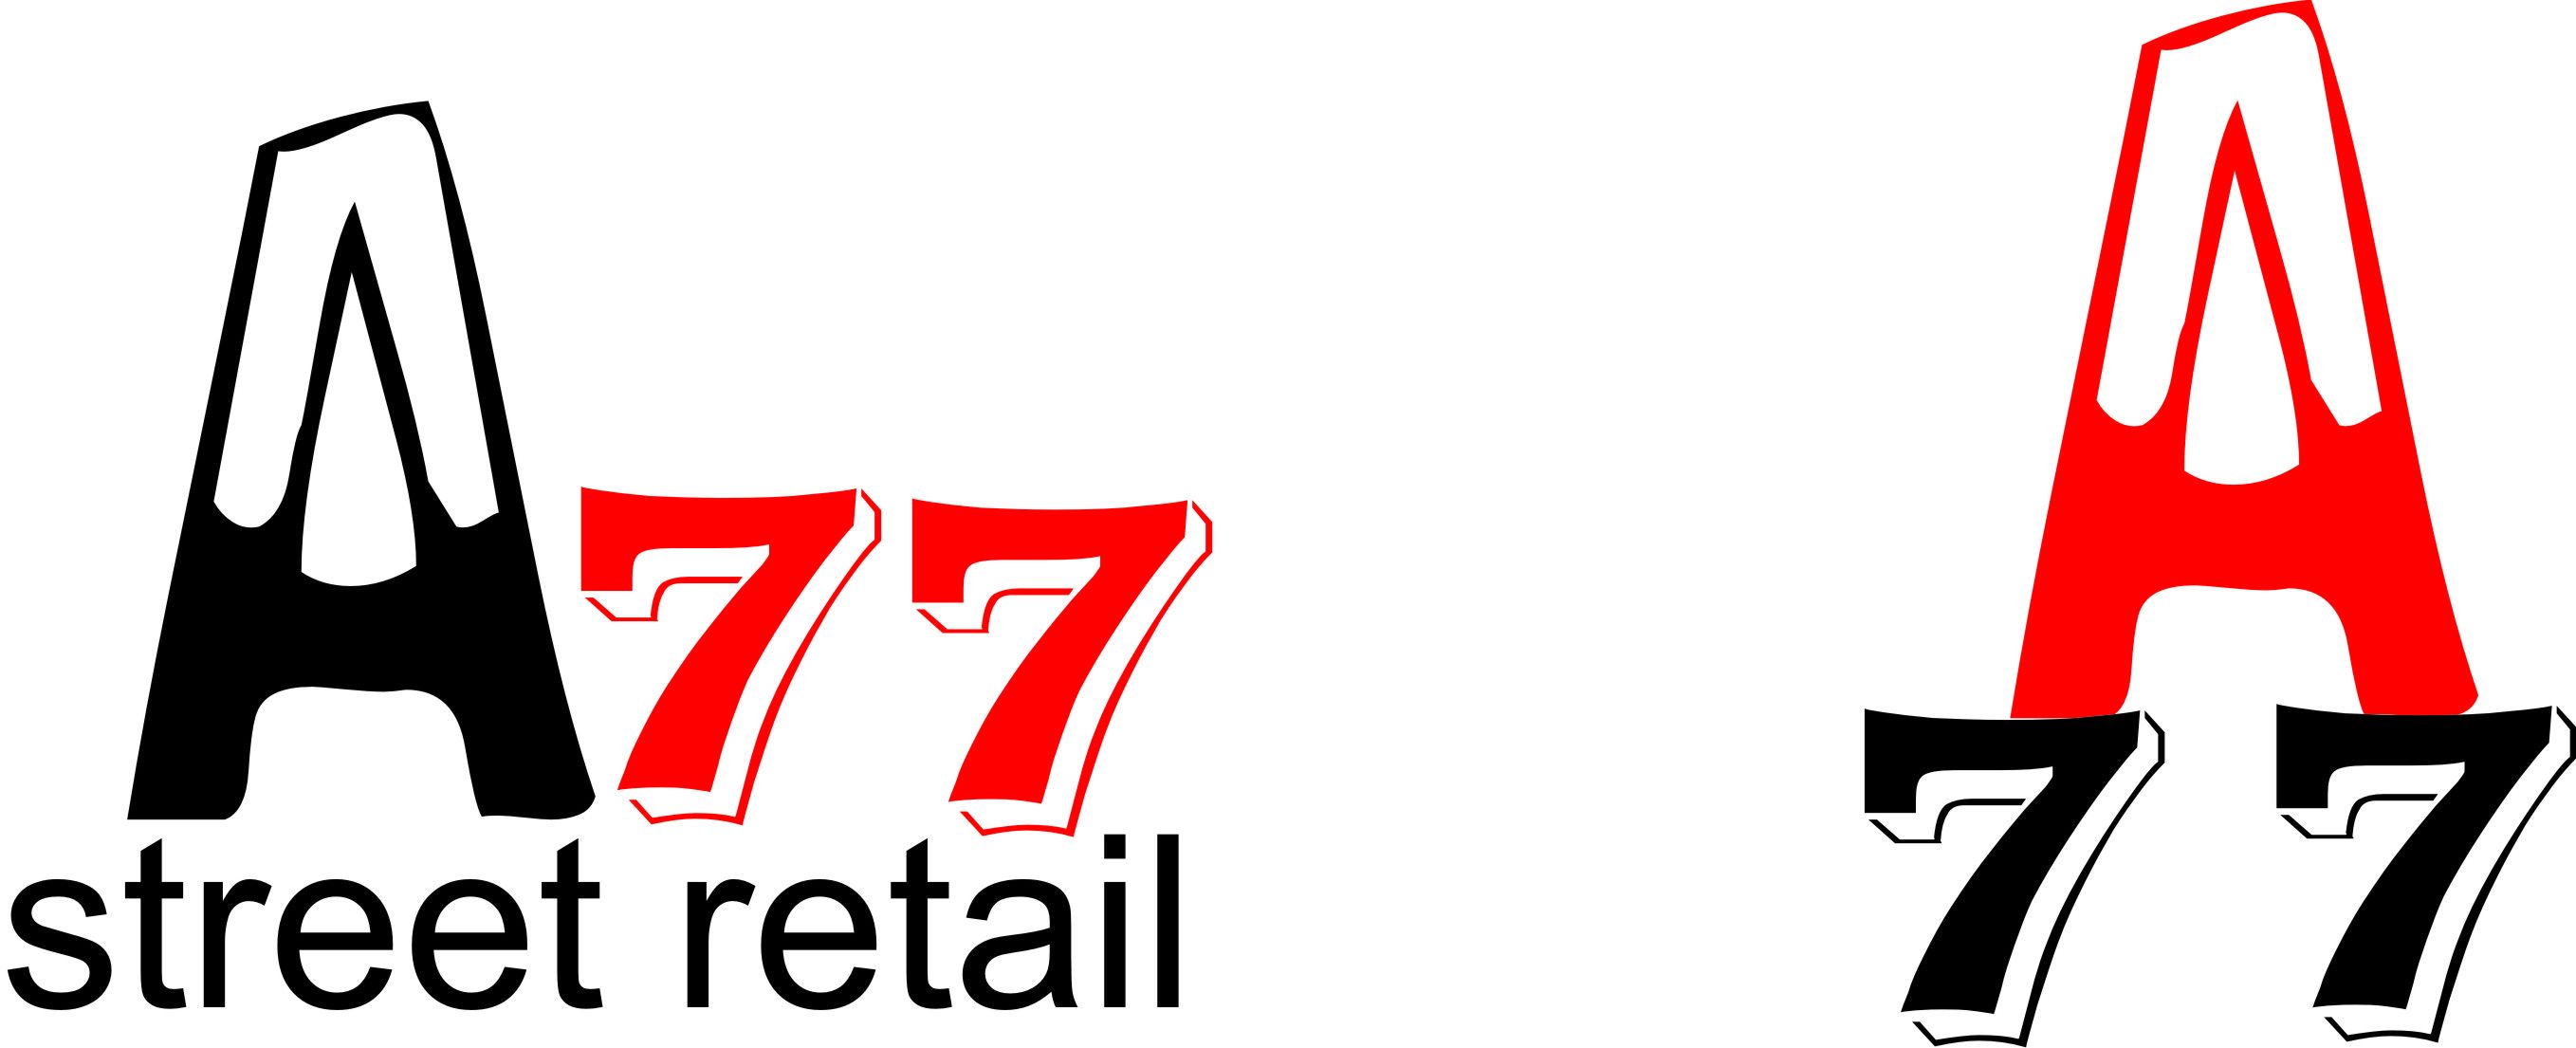 Лого для сайта по коммерческой недвижимости A77.RU - дизайнер Juuuliiiii